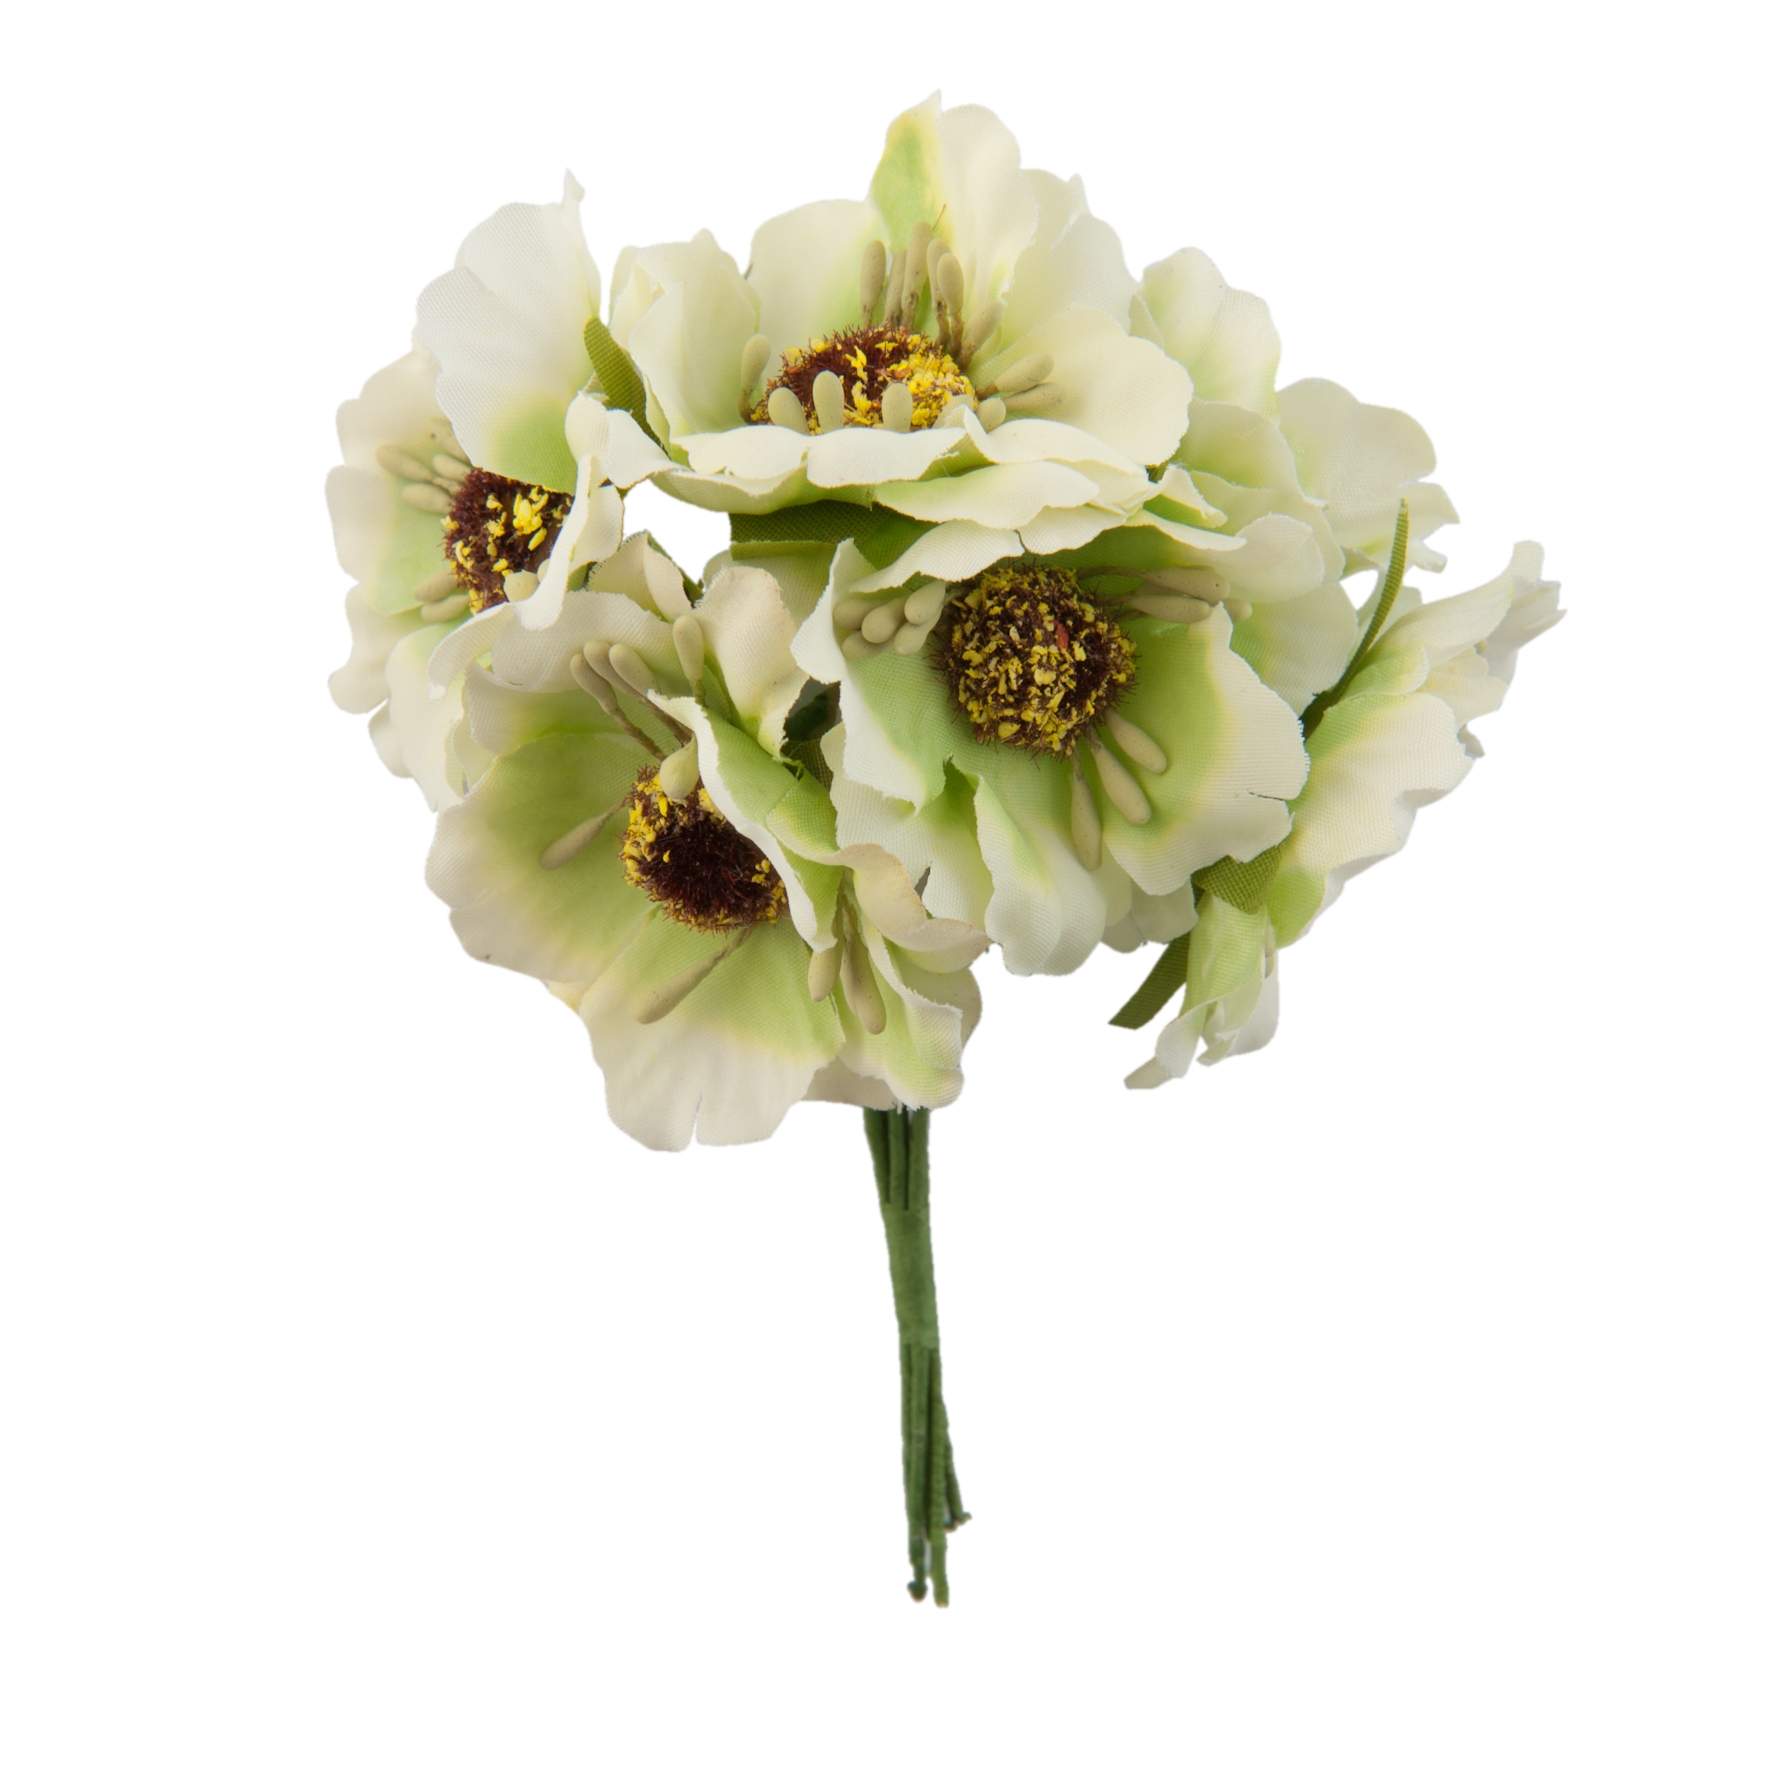 Afbeelding van Zak à 60 decoratie bloem r4,5x8,5 cm wit/groen